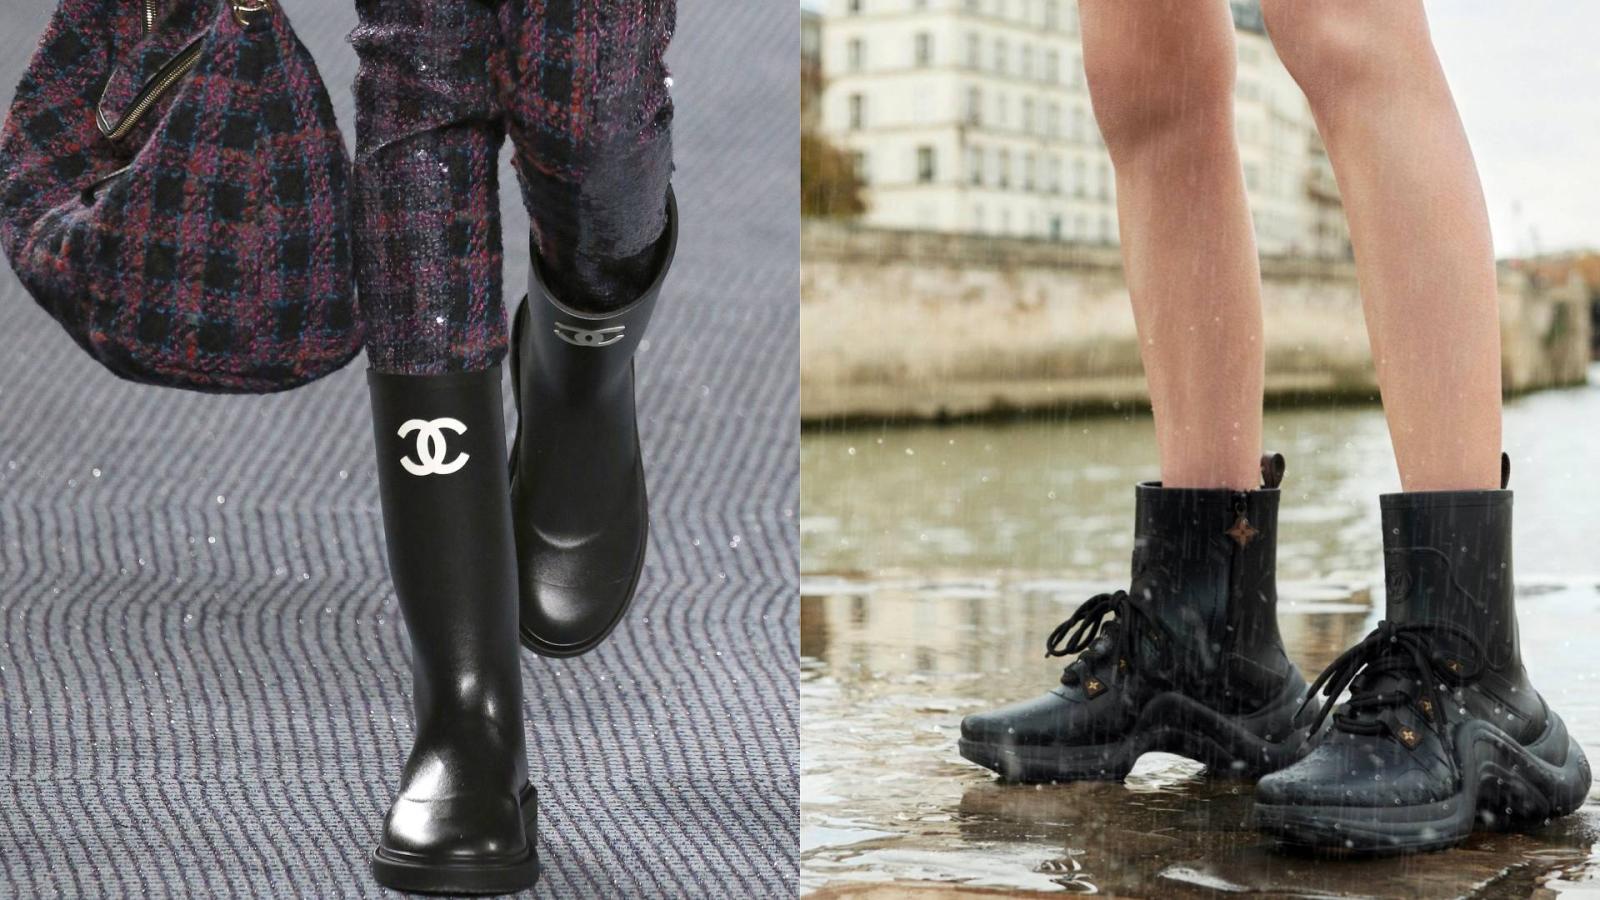 Резиновые сапоги защитят ноги от воды и грязи: такие модели можно носить в городе - image 1